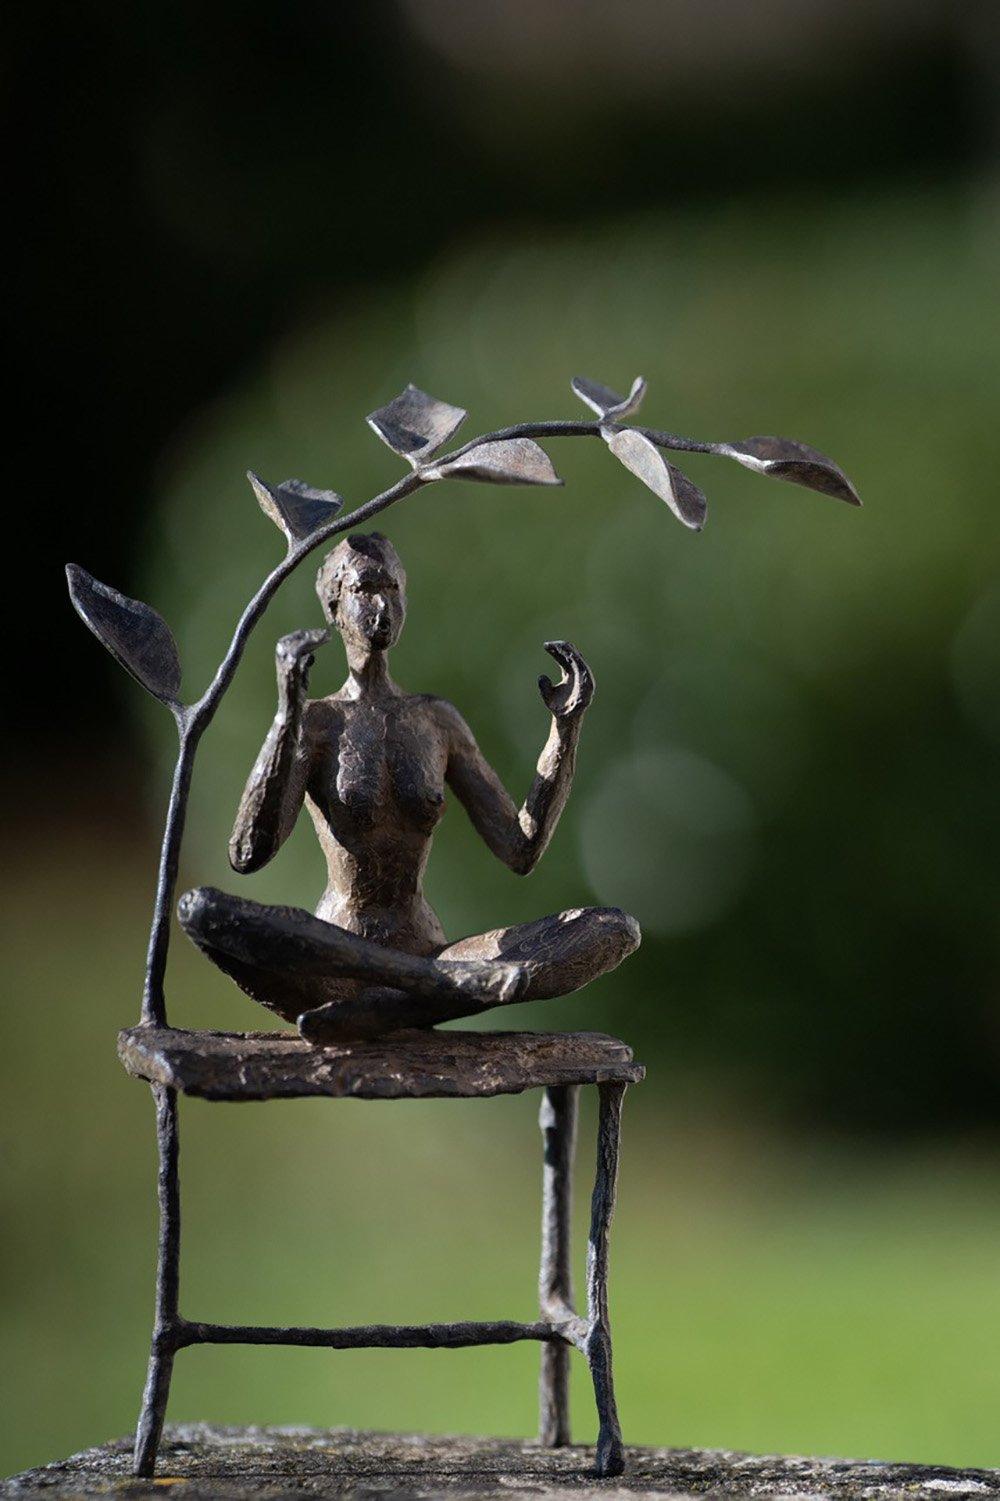 Der Meditationsgarten ist eine Bronzeskulptur der französischen zeitgenössischen Künstlerin Marine de Soos mit den Maßen 26 × 13 × 7 cm (10,2 × 5,1 × 2,8 in). 
Die Skulptur ist signiert und nummeriert, gehört zu einer limitierten Auflage von 8